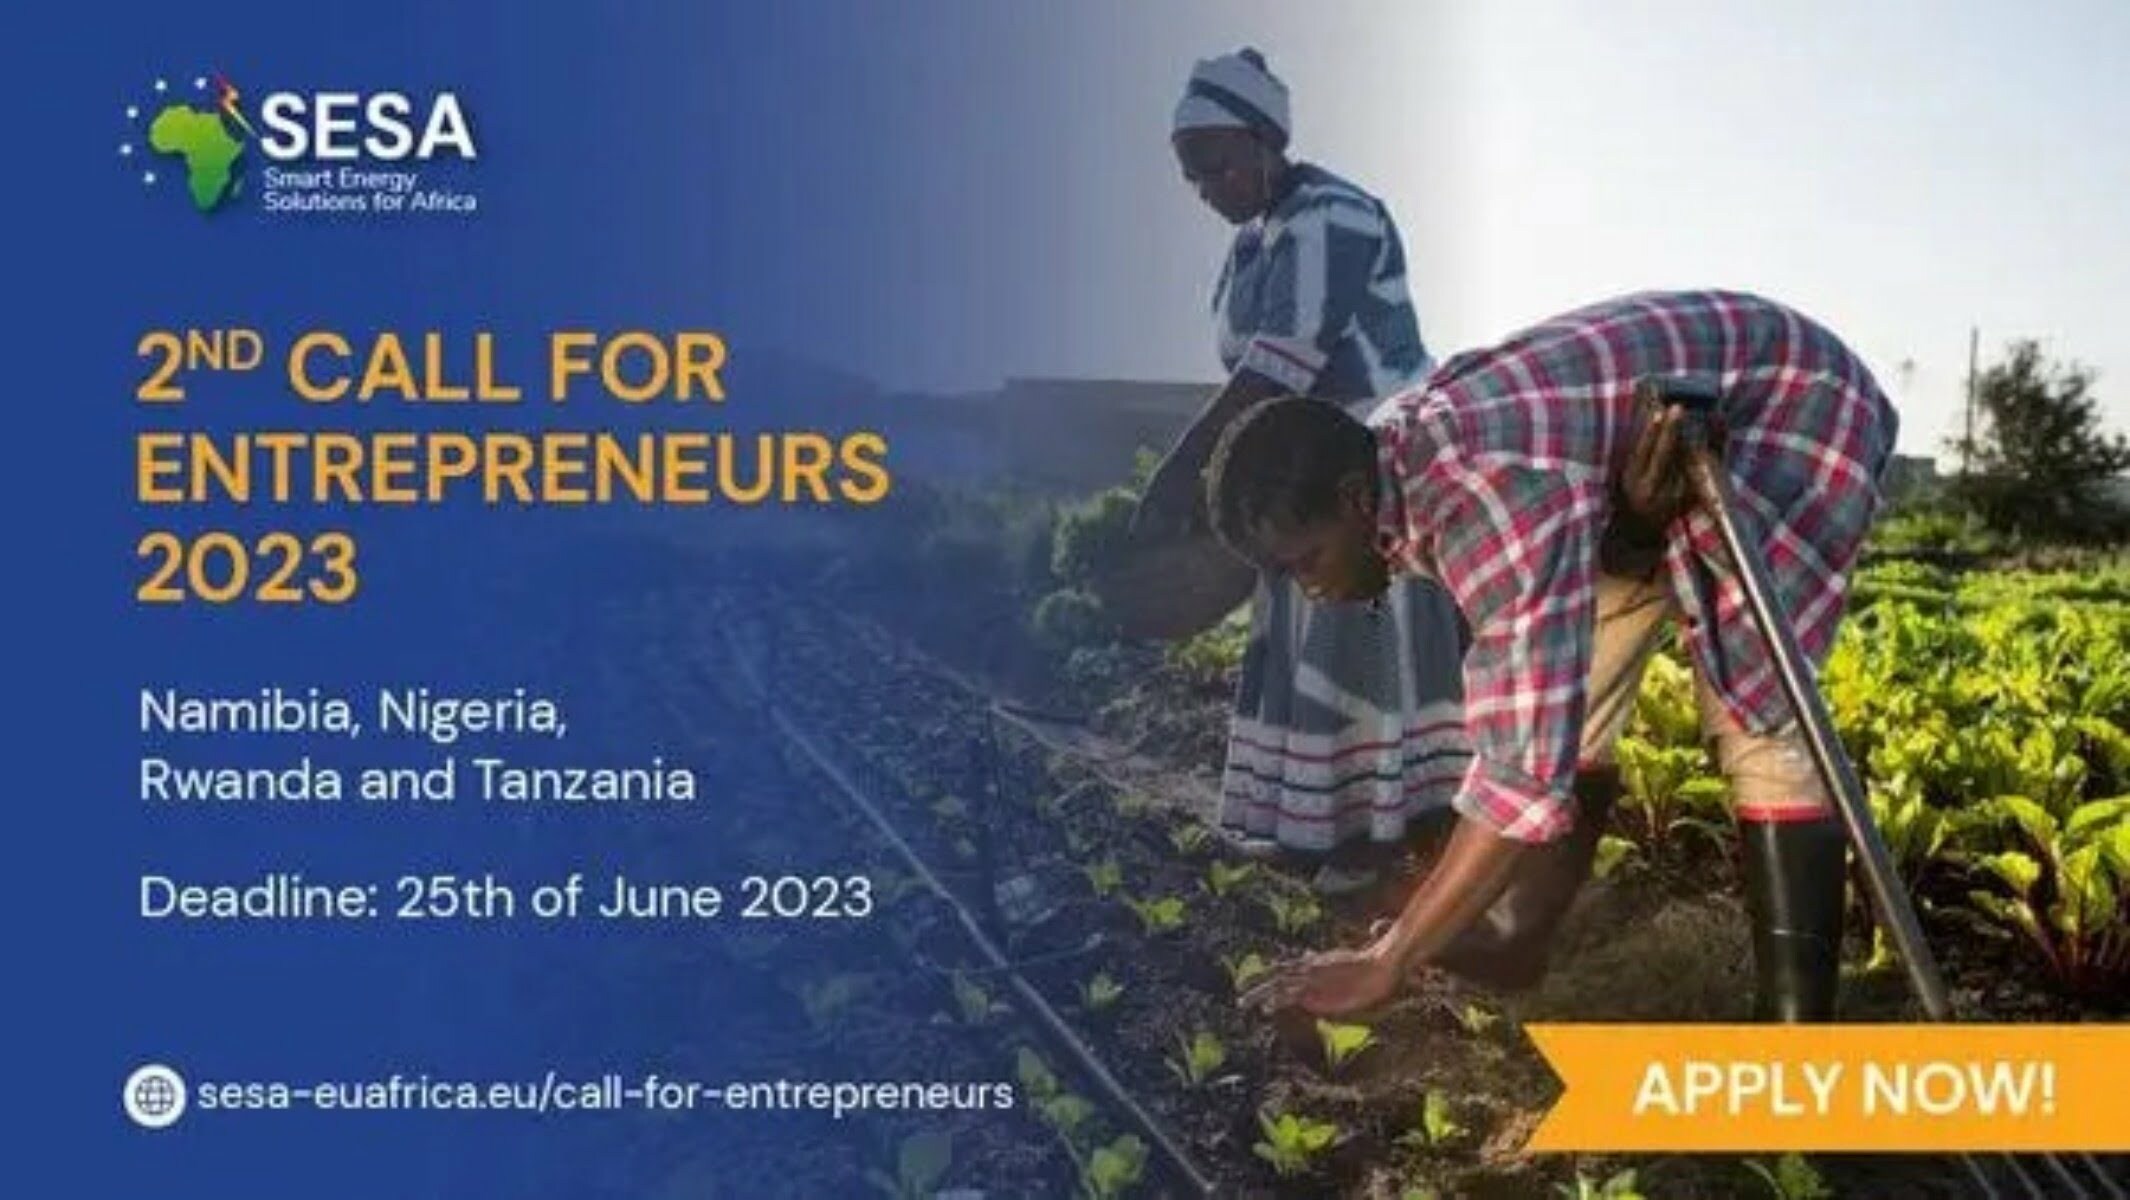 Smart Energy Solutions for Africa (SESA) 2023 Call for Entrepreneurs